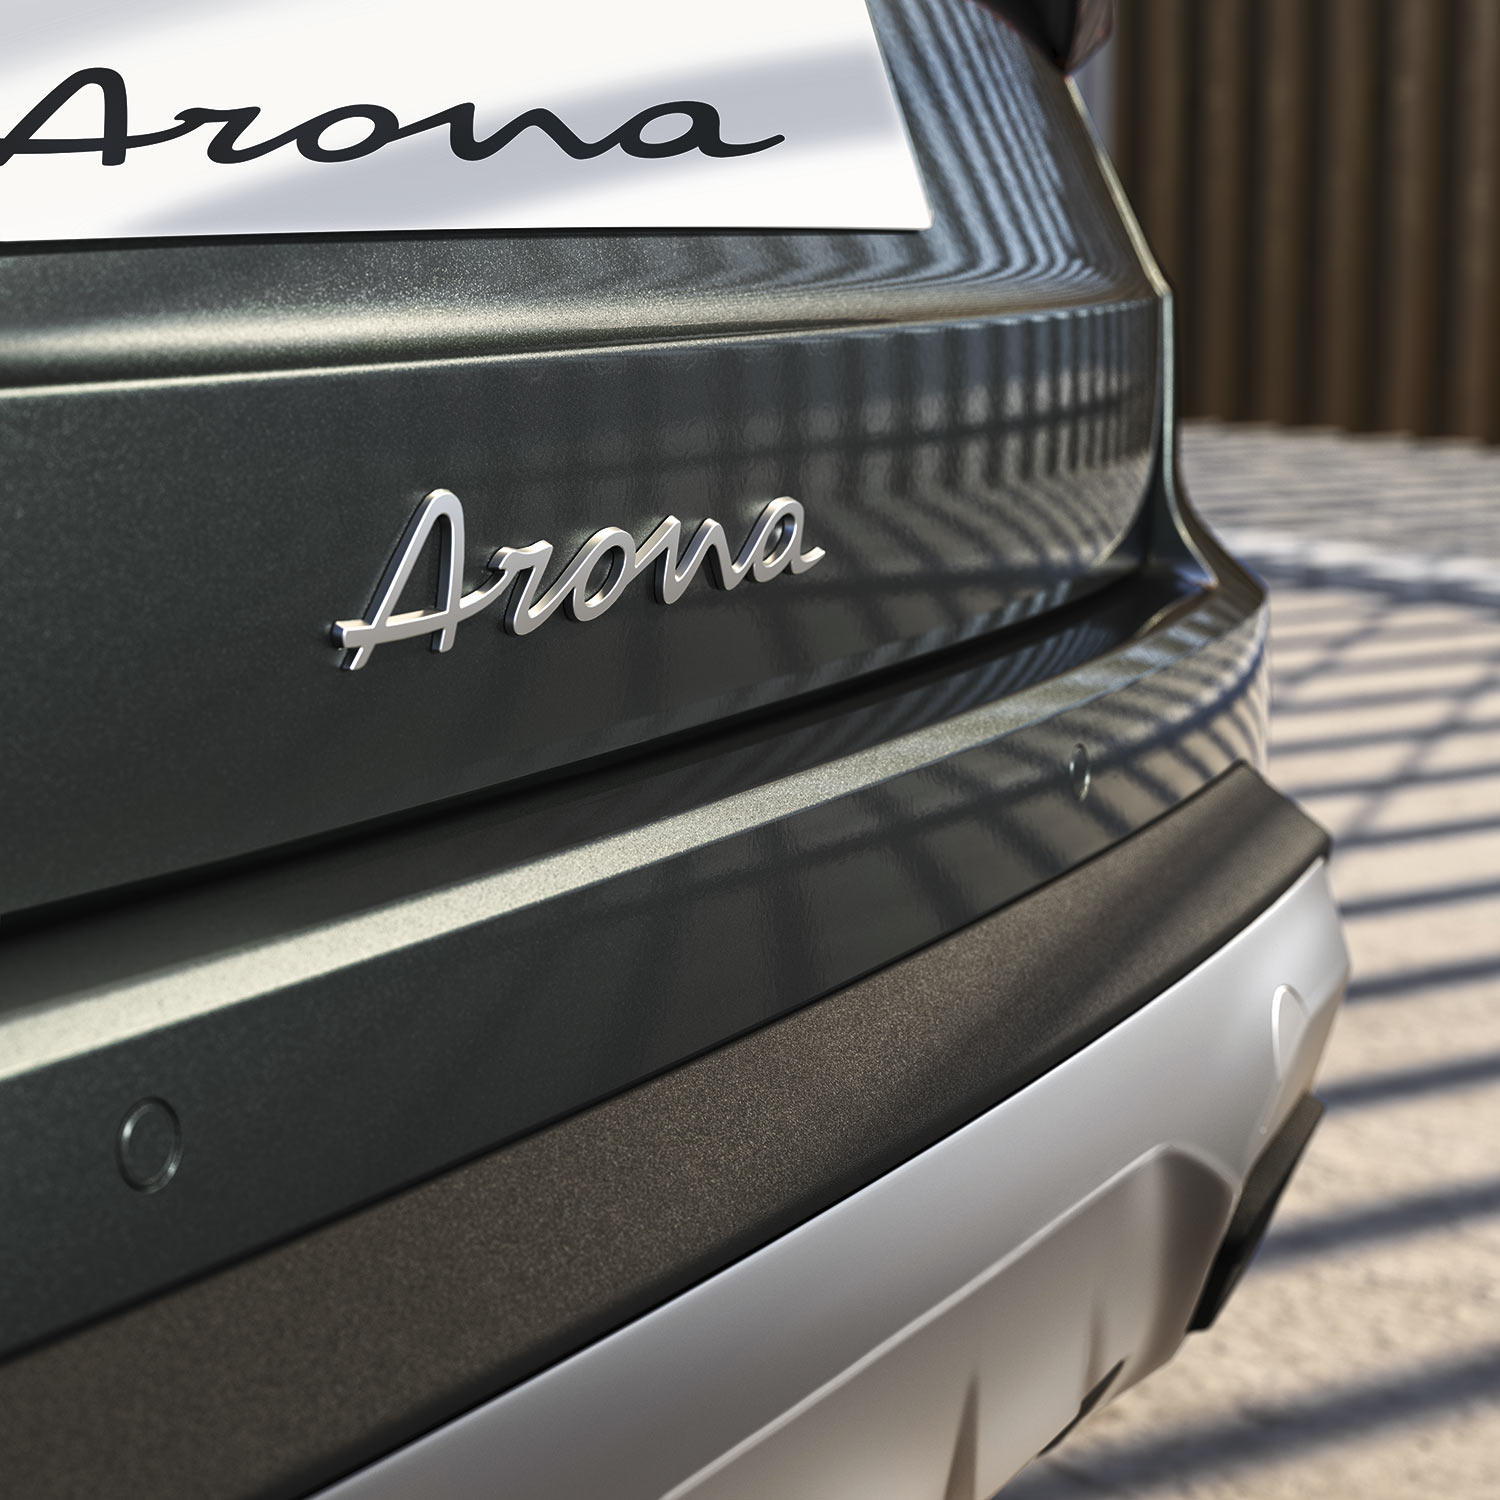 SEAT Arona 2022 en México con nuevo diseño exterior parte trasera nuevo emblema con letras cursivas